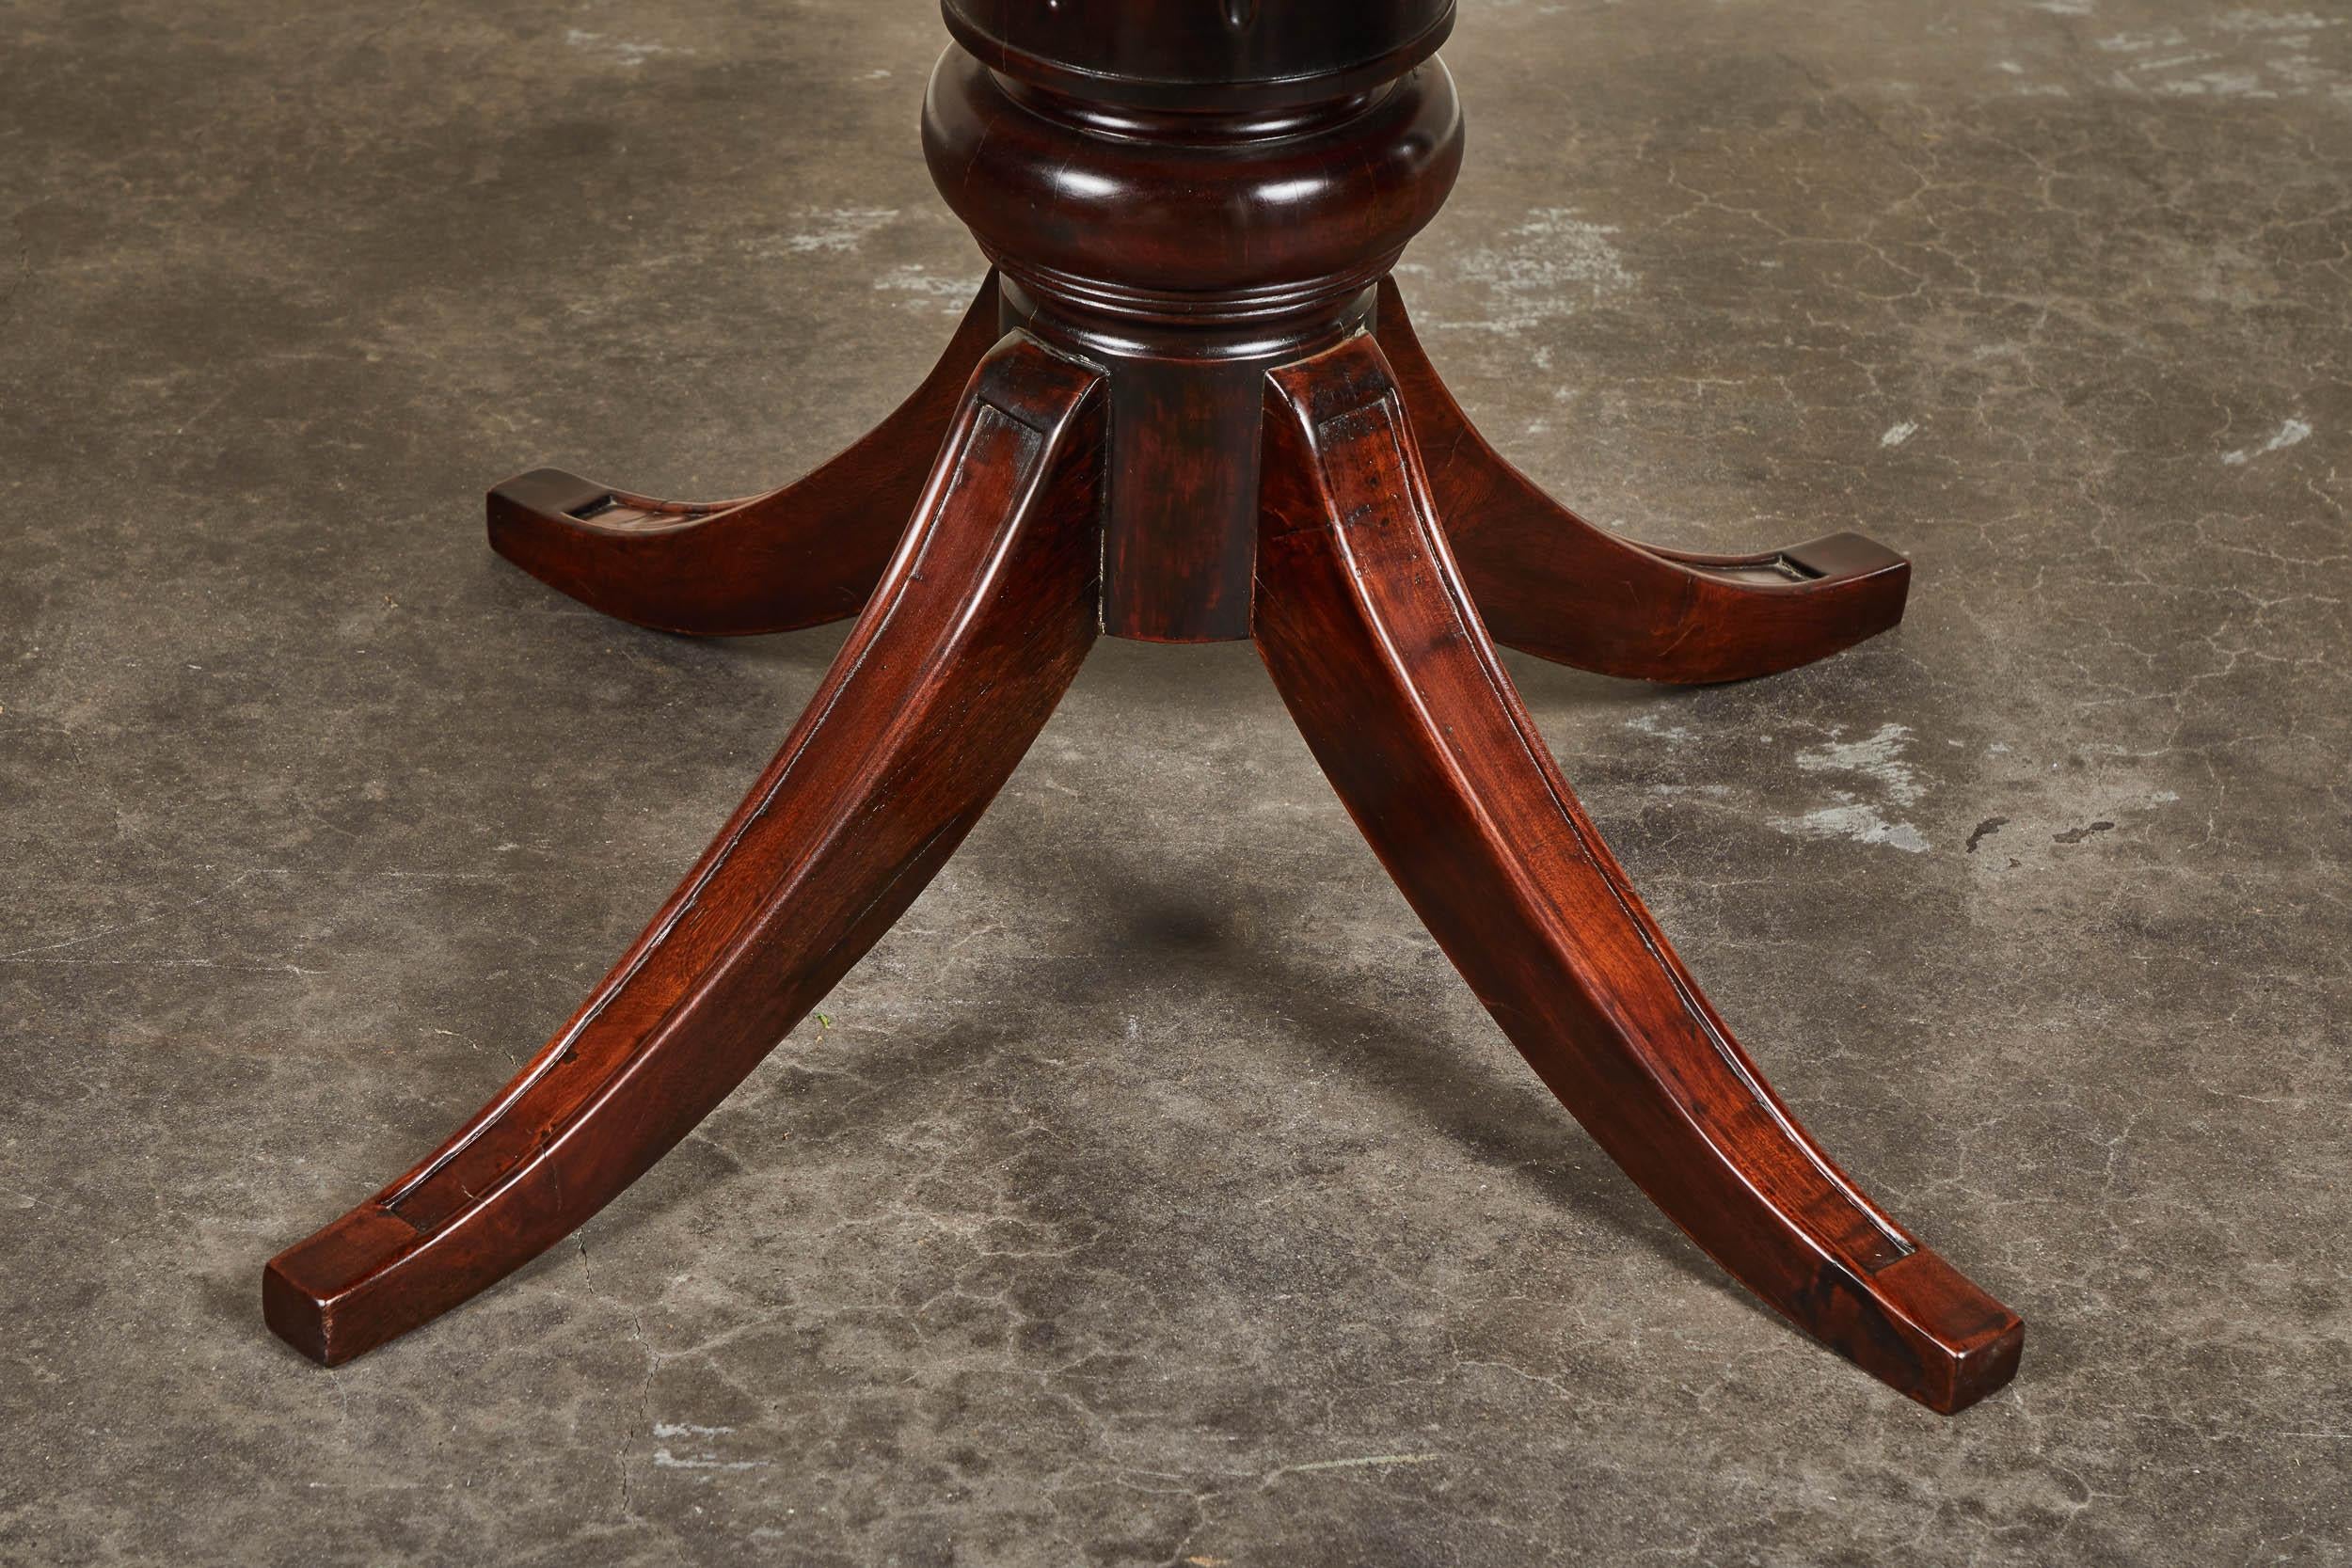 Une table de tambour coloniale française du 19ème siècle en bois de rose. Il comporte cinq tiroirs et une base sur pied.